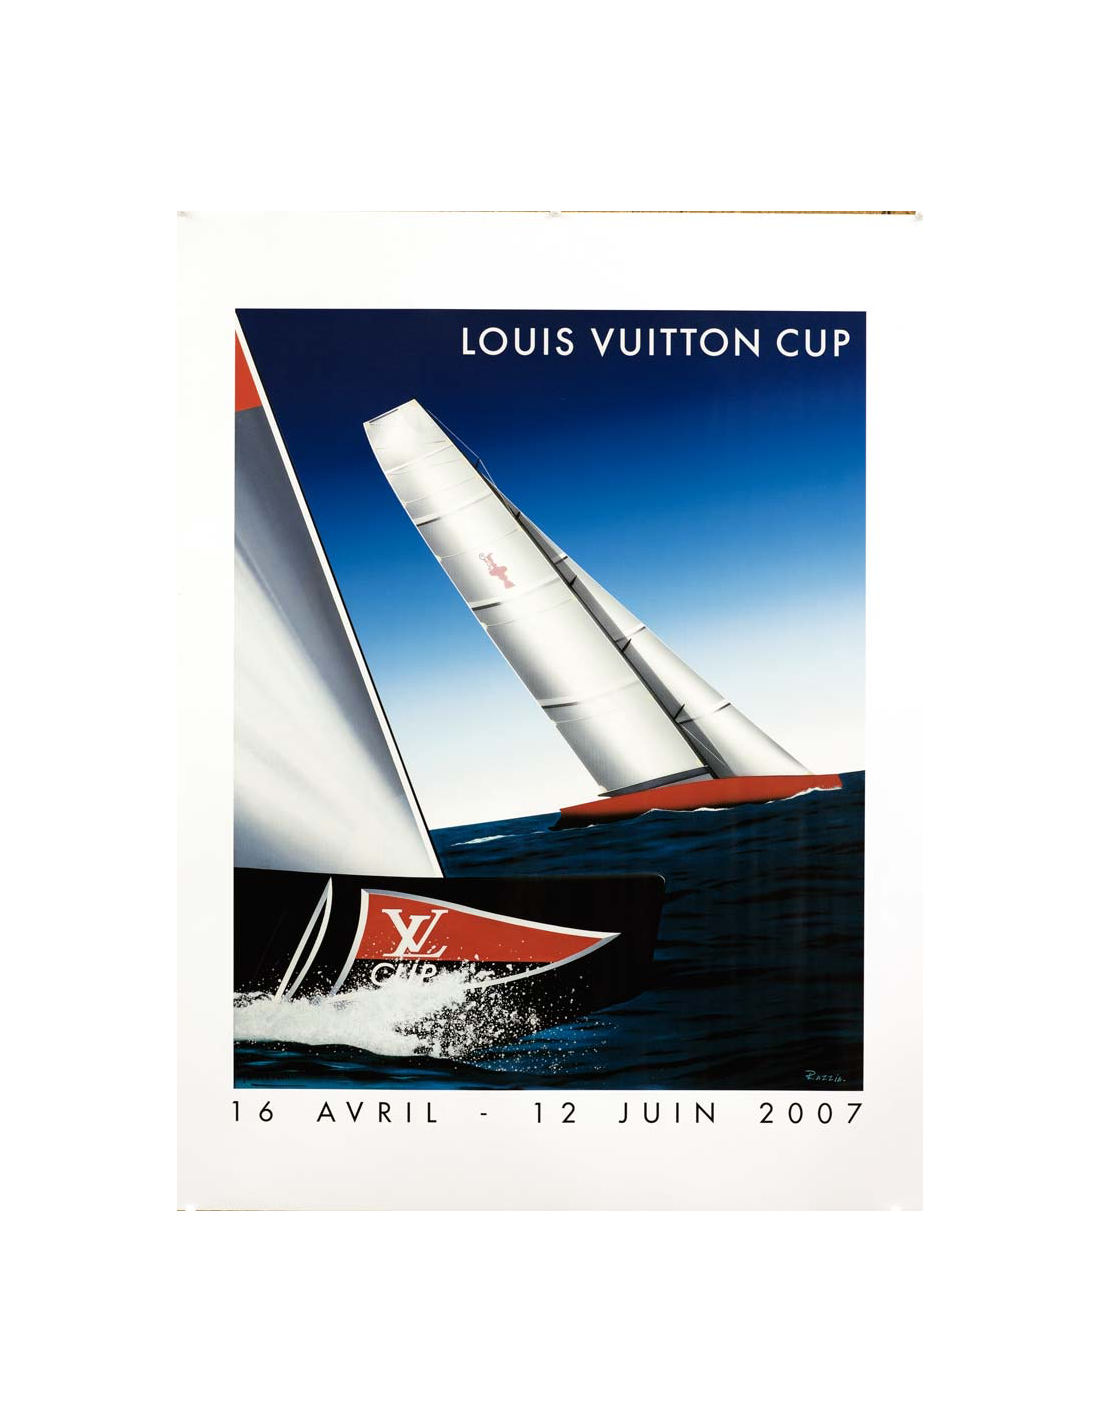 Louis Vuitton Handsign poster